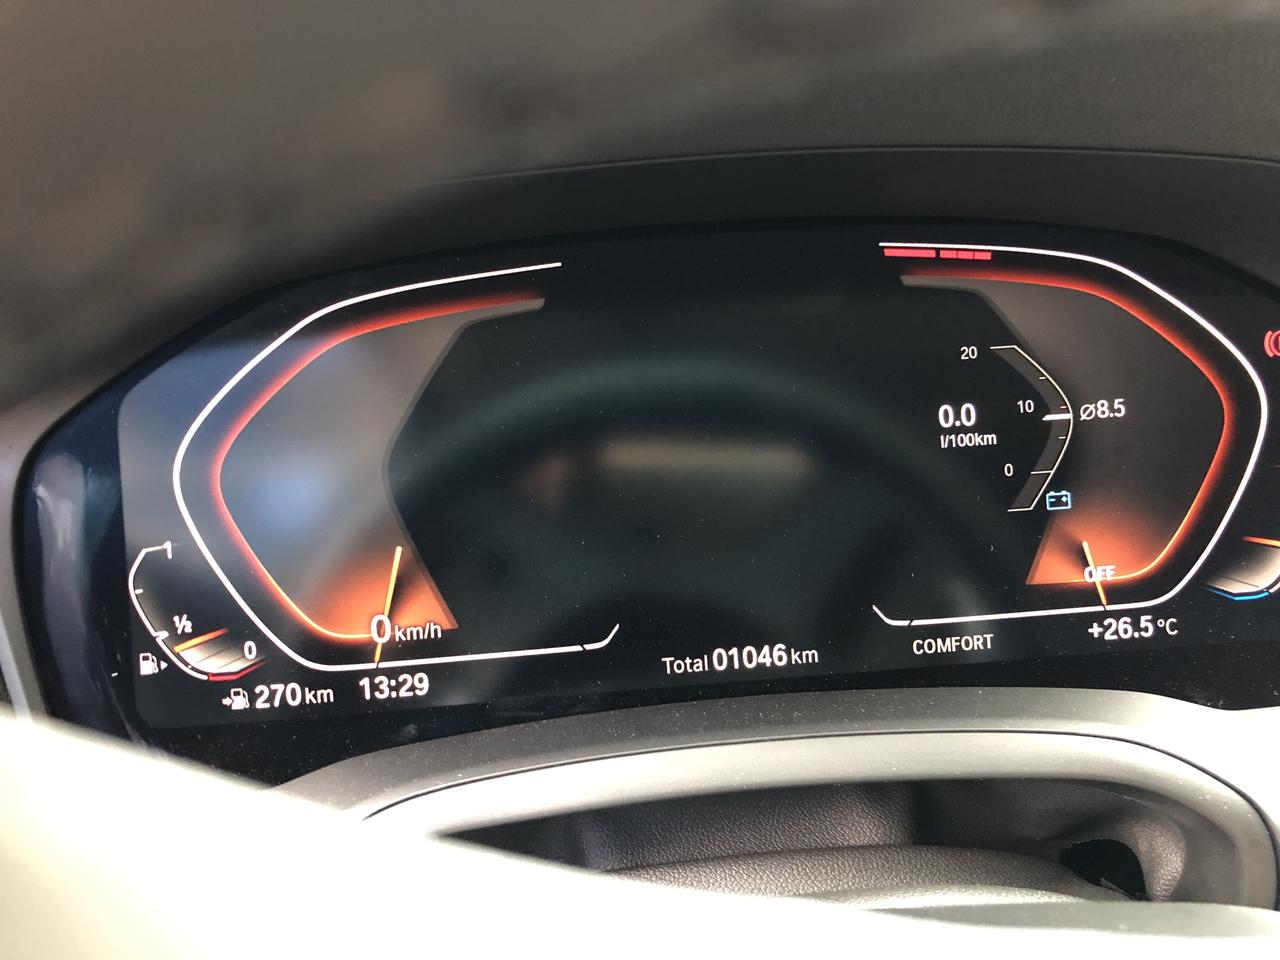 宝马3系 驻车熄火，想在车里呆一会，这个屏幕怎么关掉，按了启动键不行，连按两下也不行，还有按音量键也不行